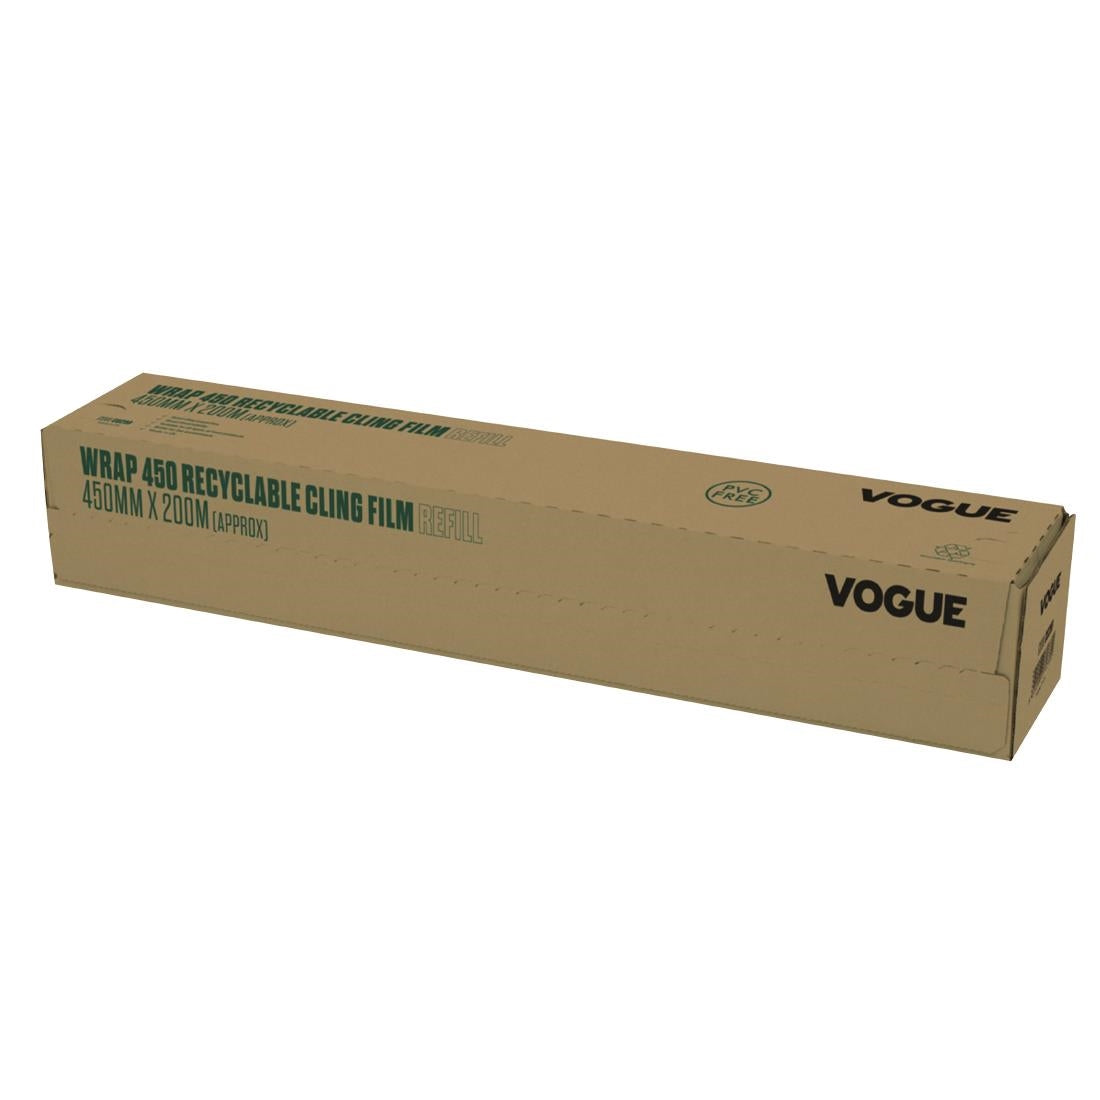 SA778 Vogue Wrap 450 Eco Cling Film Dispenser Bundle